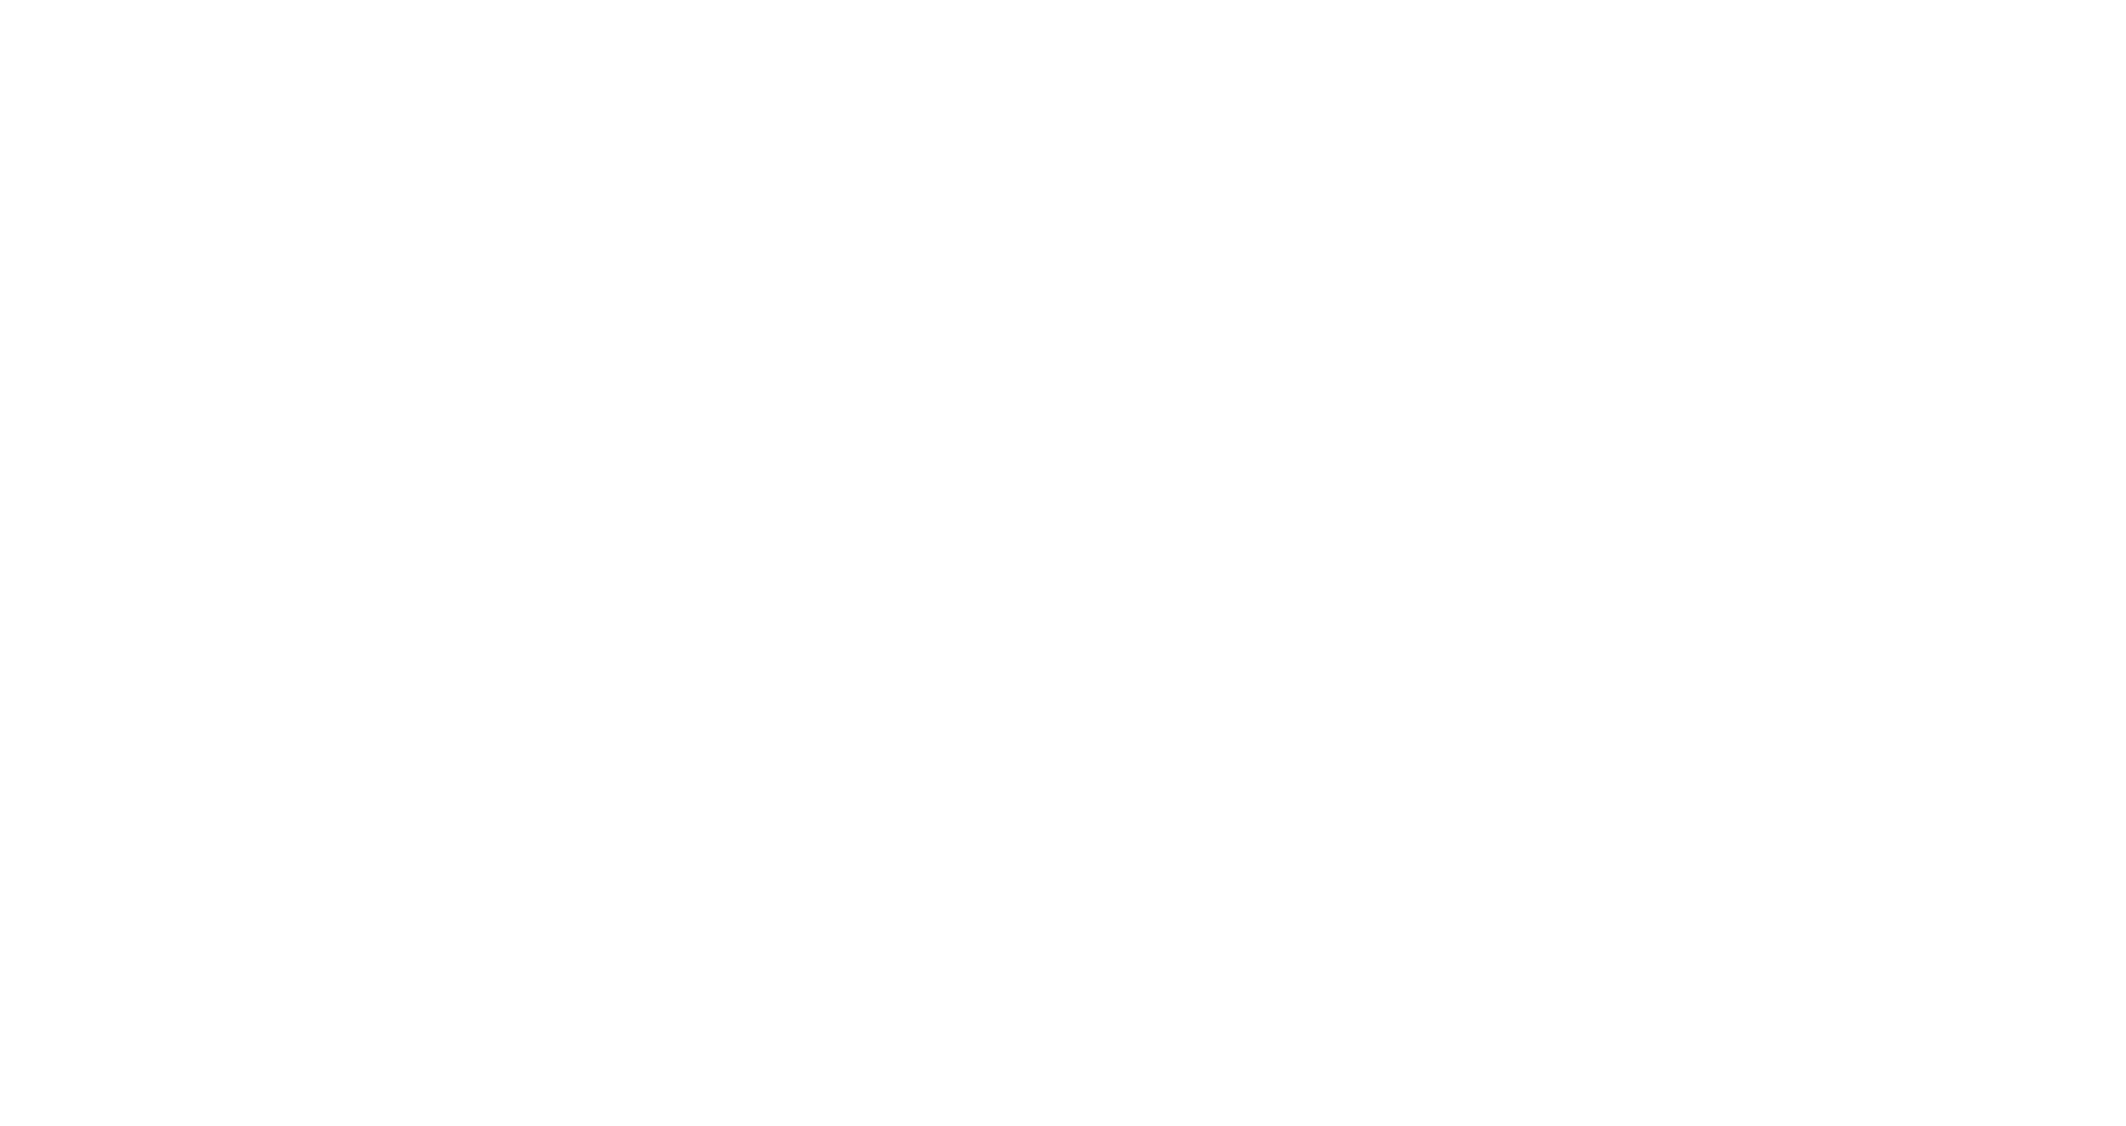 Cask